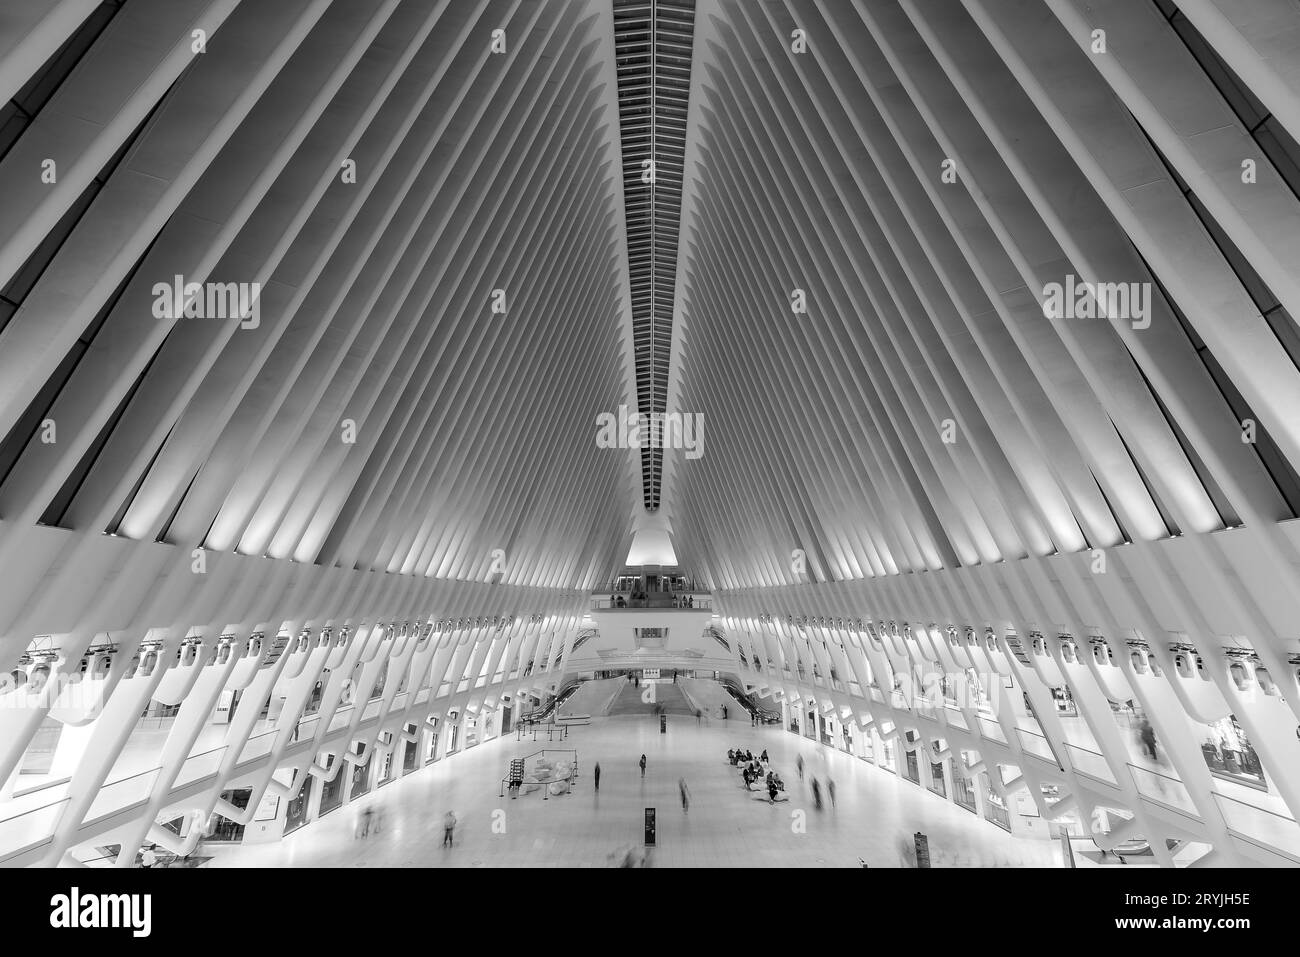 Vue unique sur le bâtiment Oculus dans la ville de Lower Manhattan New Yourk. Ceci est une forme fantastique architecture moderne à côté de 9/11 mémorial musée A. Banque D'Images